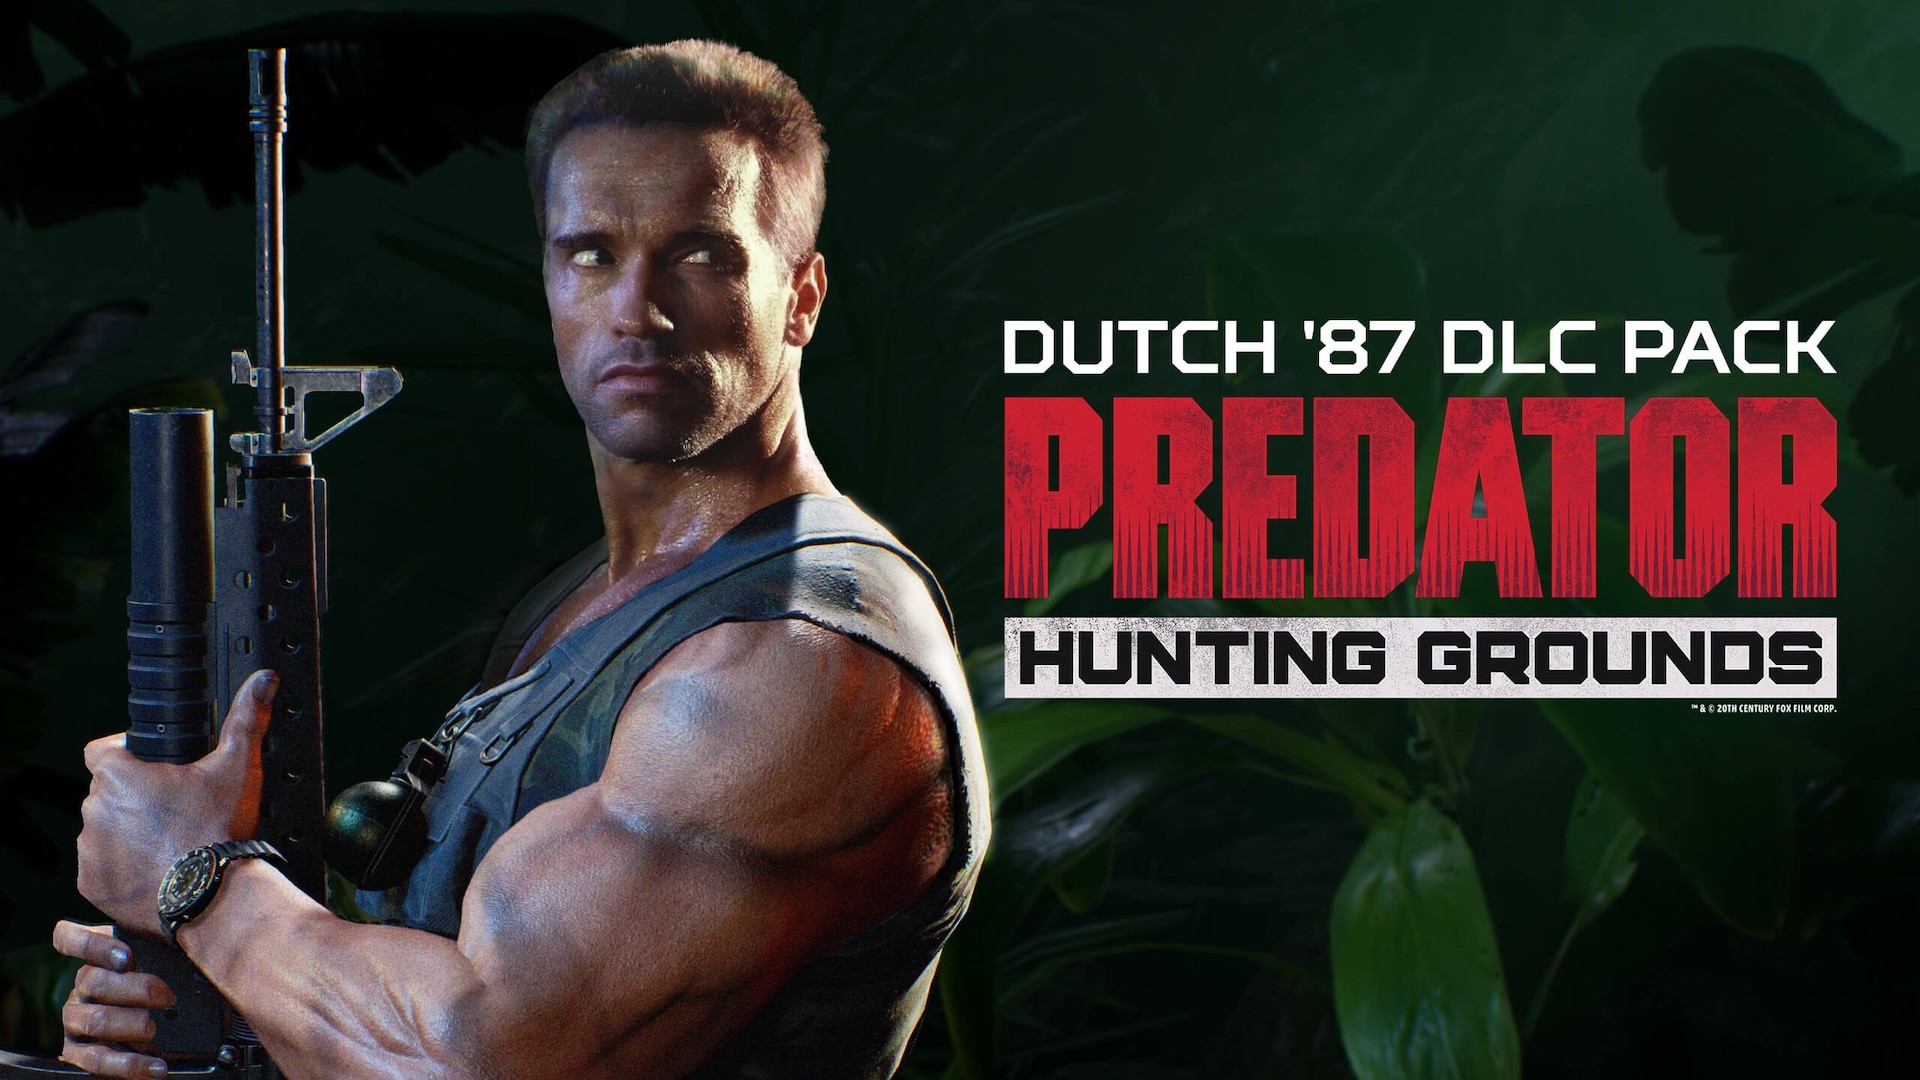 画像ページ[4/4] 映画『プレデター』の非対称対戦ゲーム『Predator: Hunting Grounds』がPC向けに発売開始。筋肉全盛